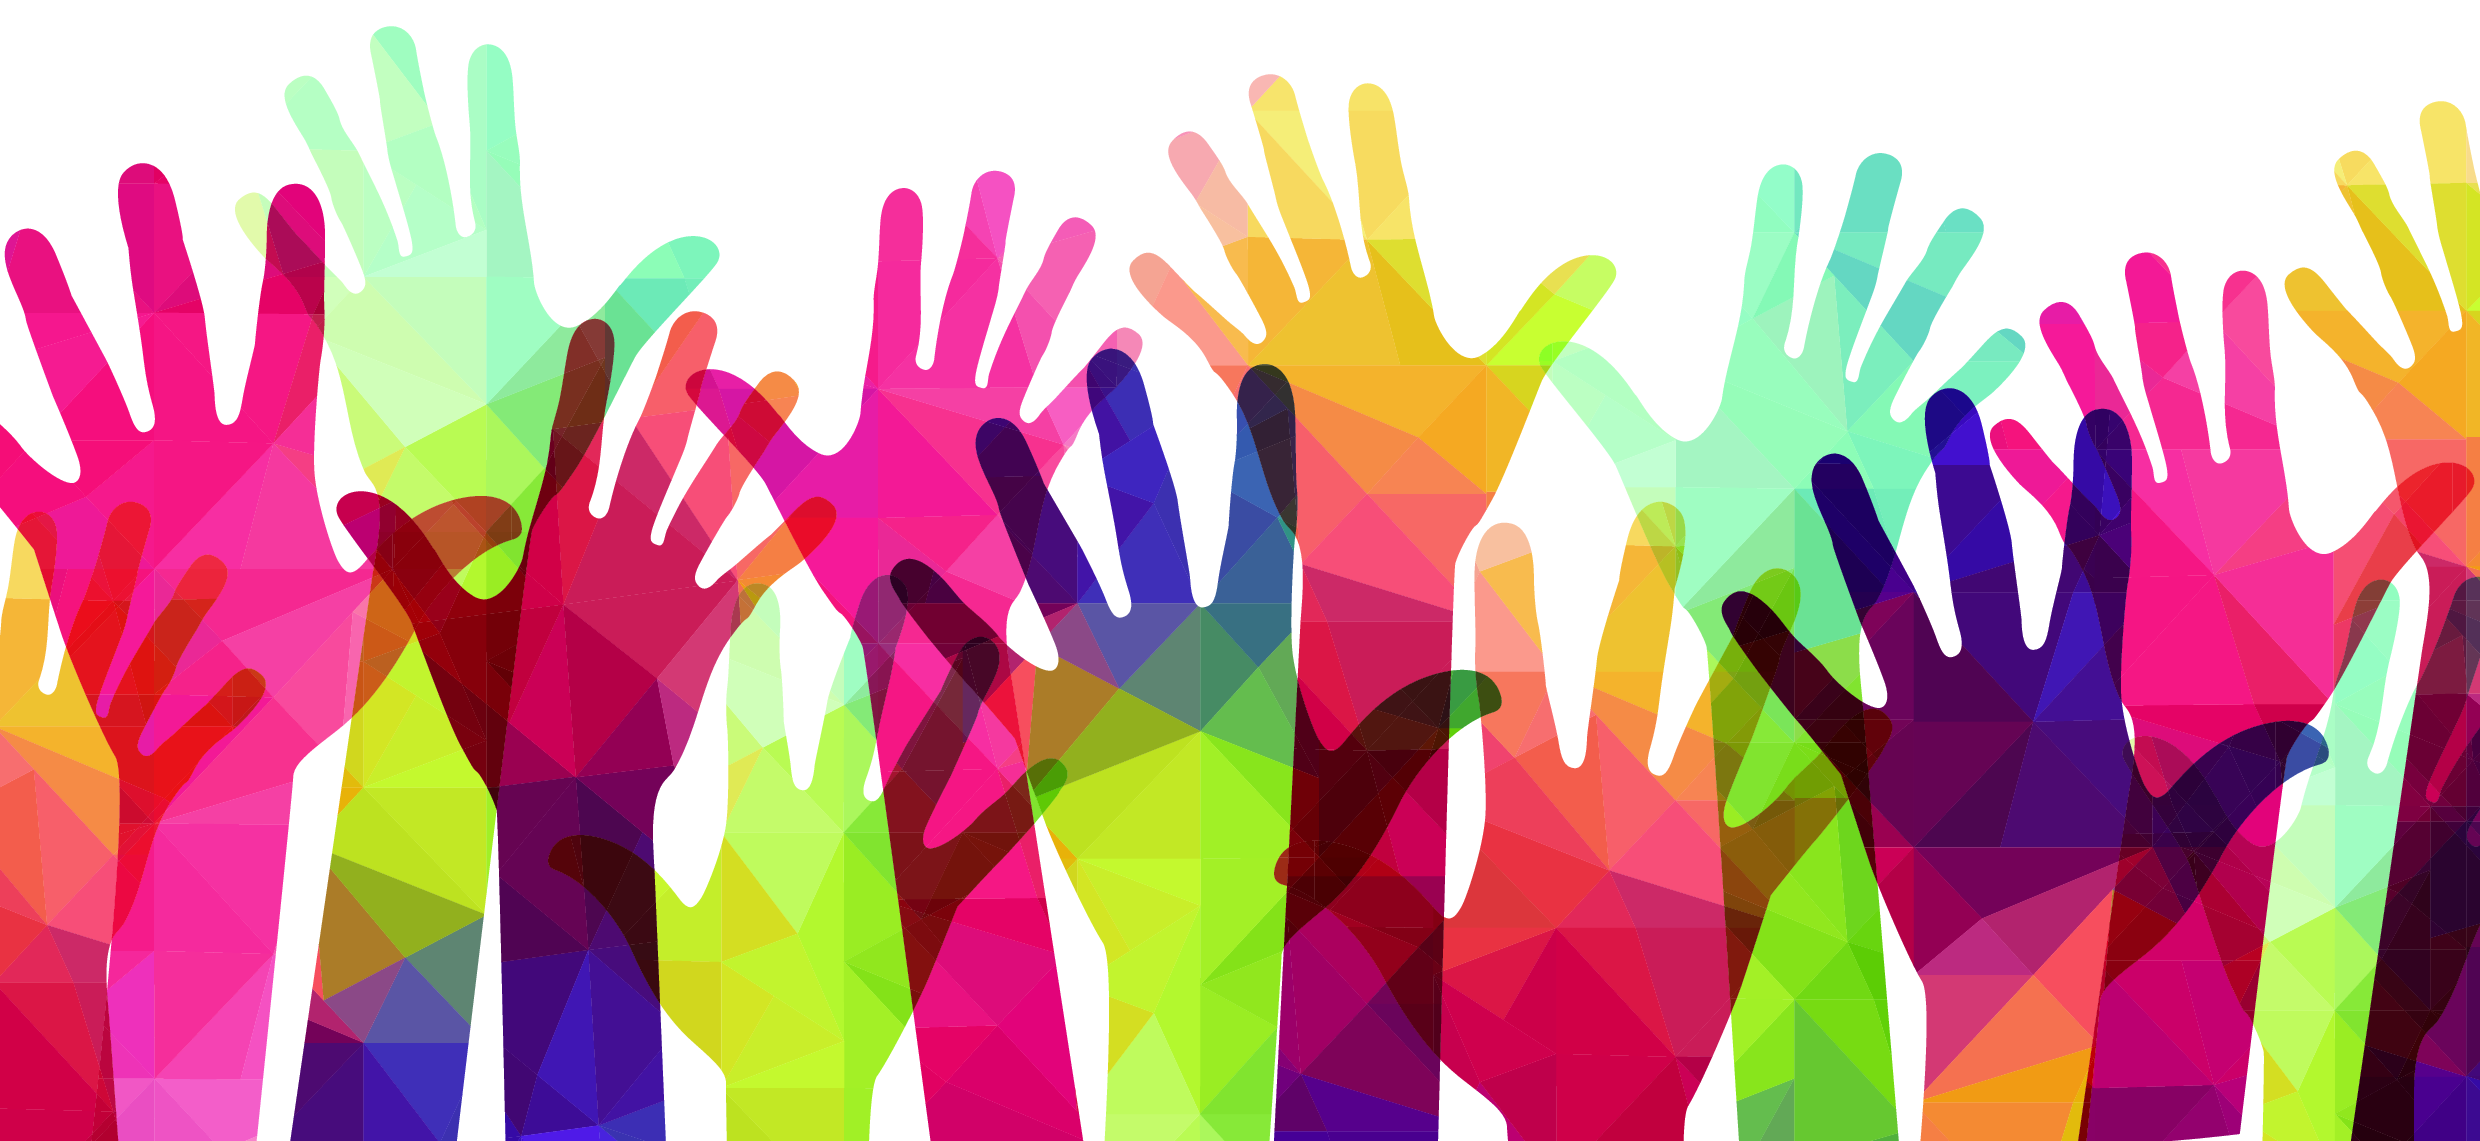 En masse hænder i forskellige farver rækkes op i luften - frivillighed.